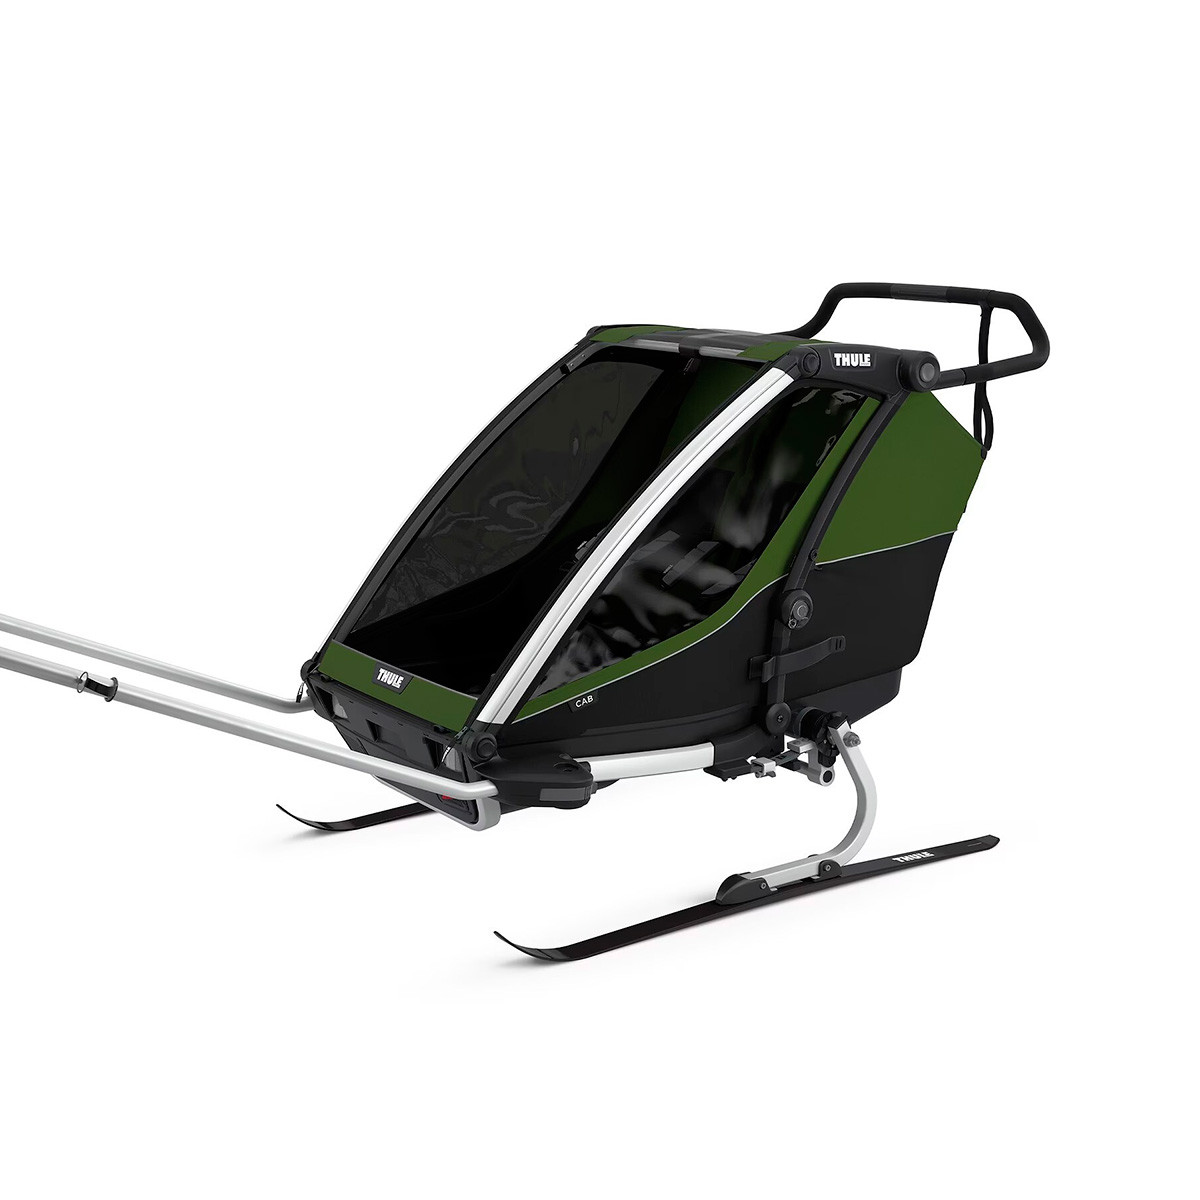 Remolque para dos Chariot CAB de Thule, posibilidad de añadir el kit de esquí (se compra por separado)